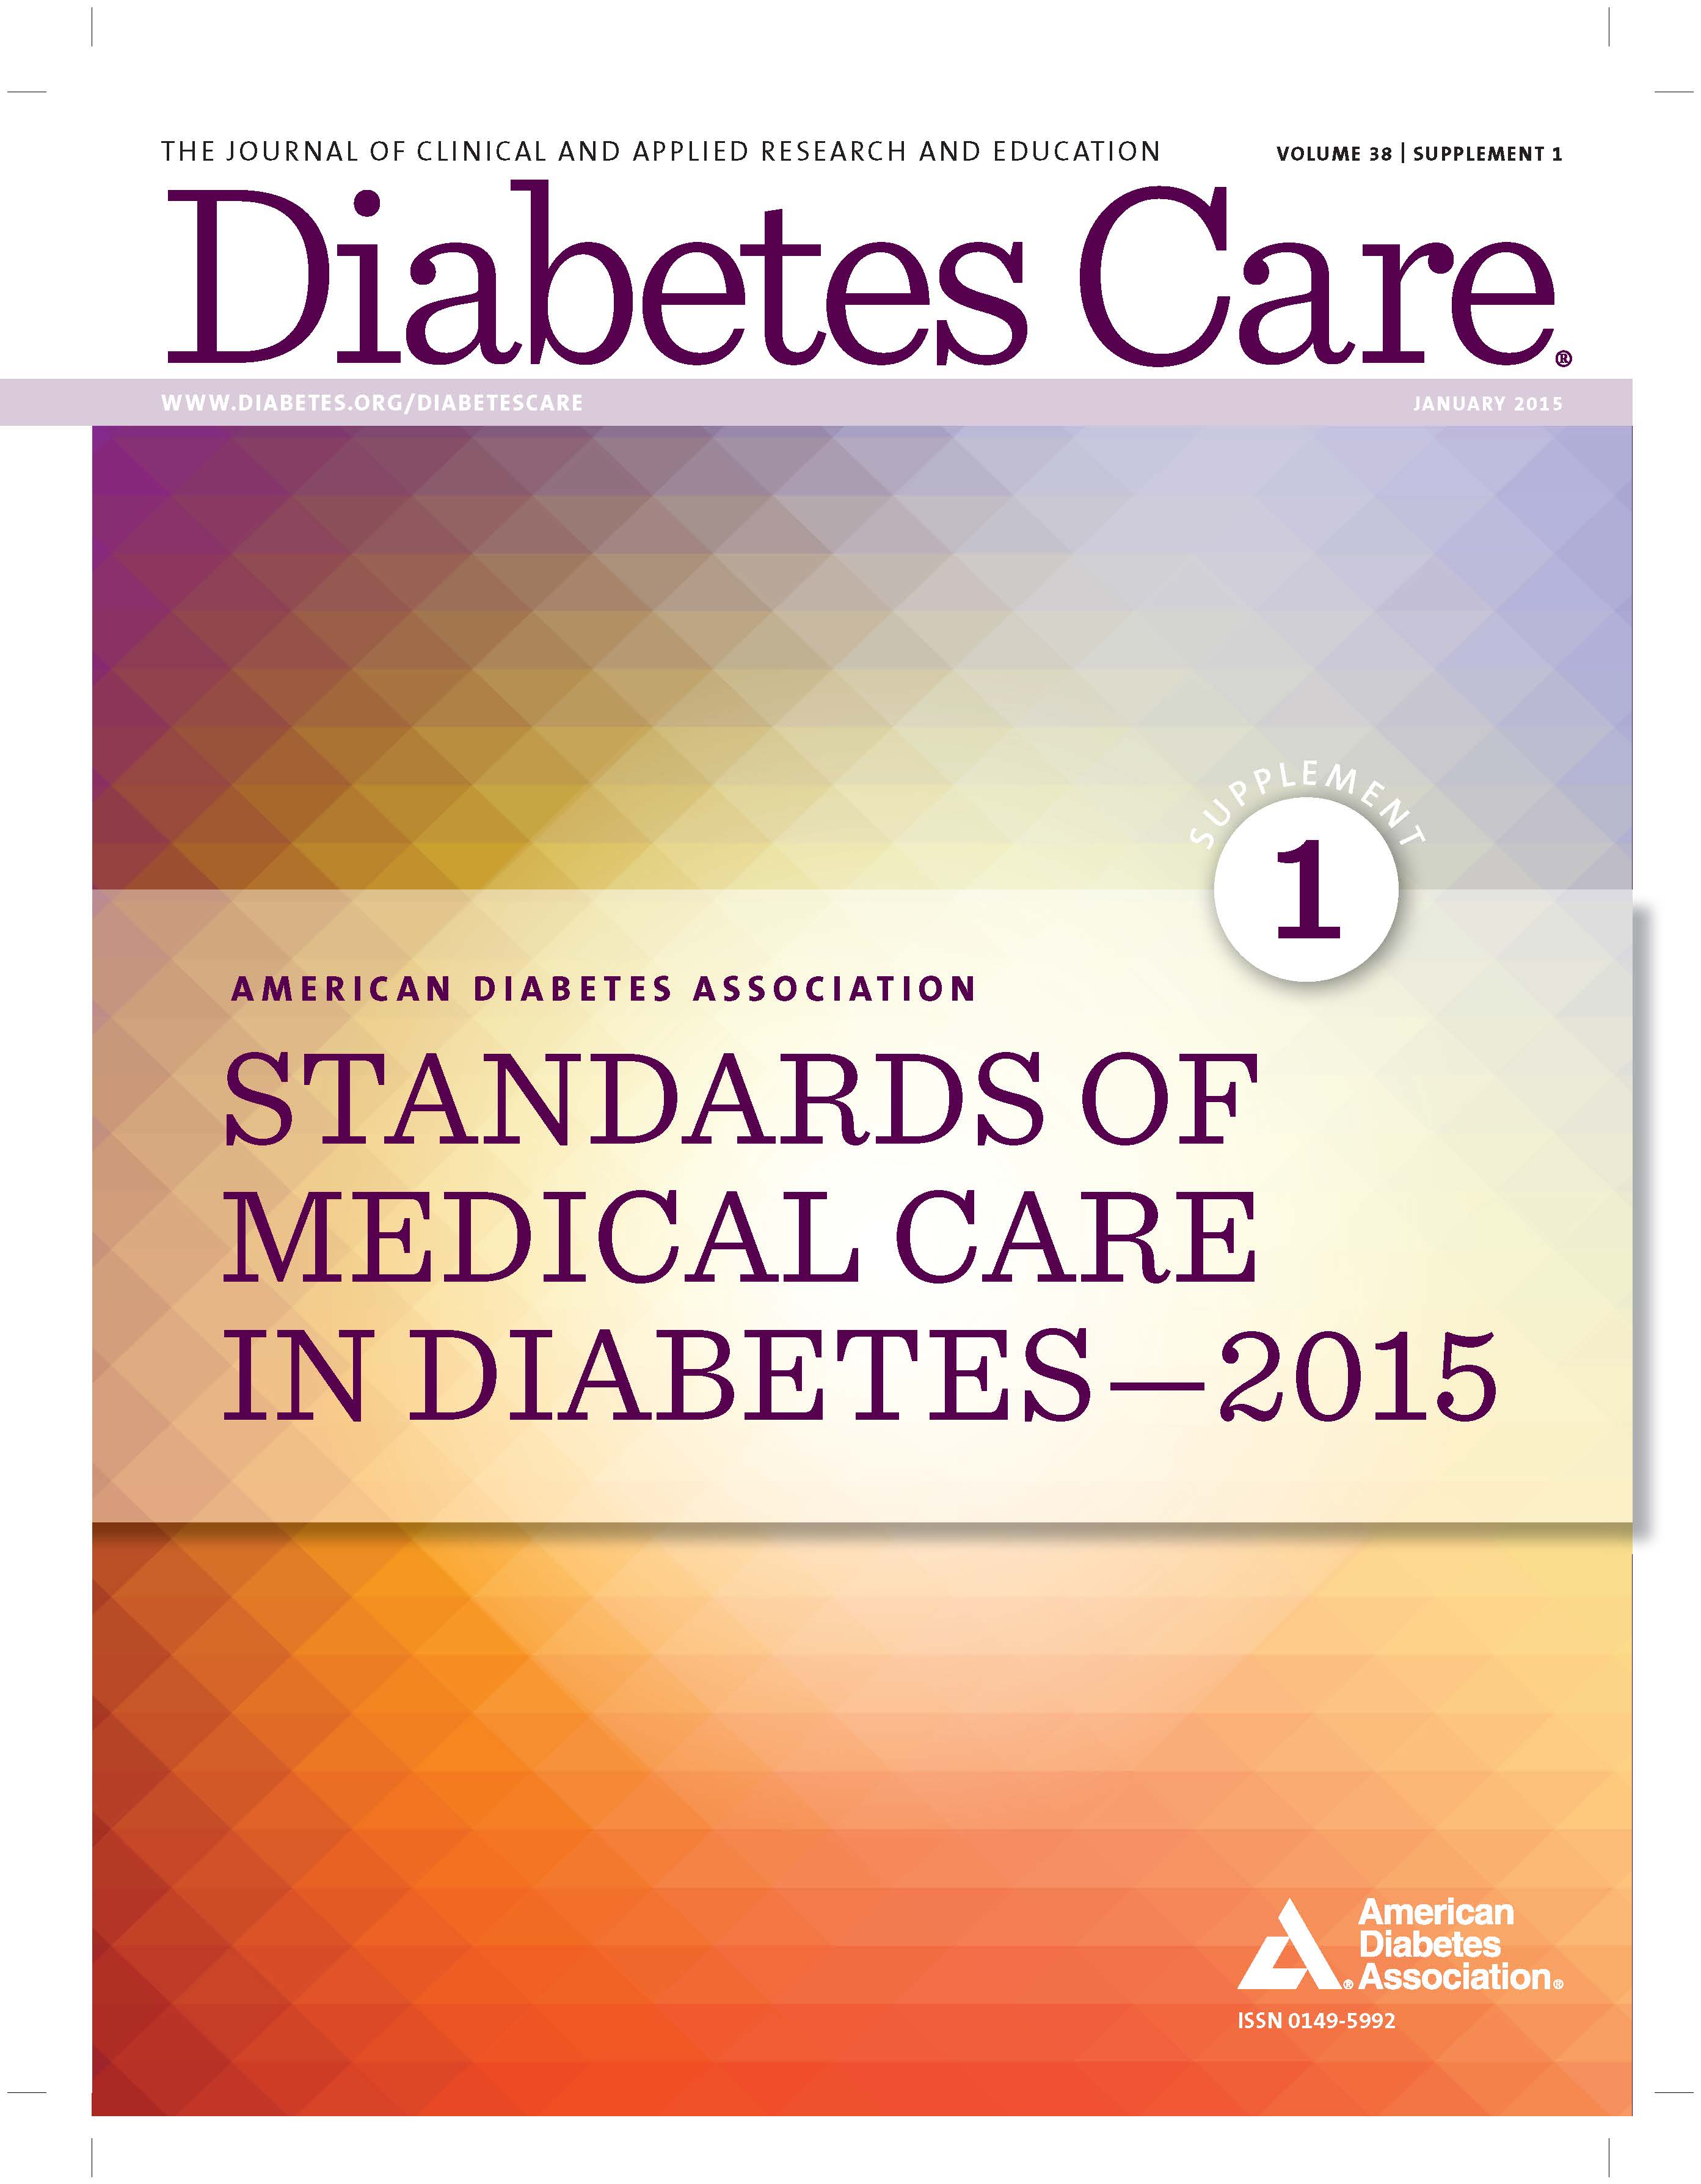 美國糖尿病協會（ADA）2015年照護標準，下調亞洲人篩選糖尿病的體重標準